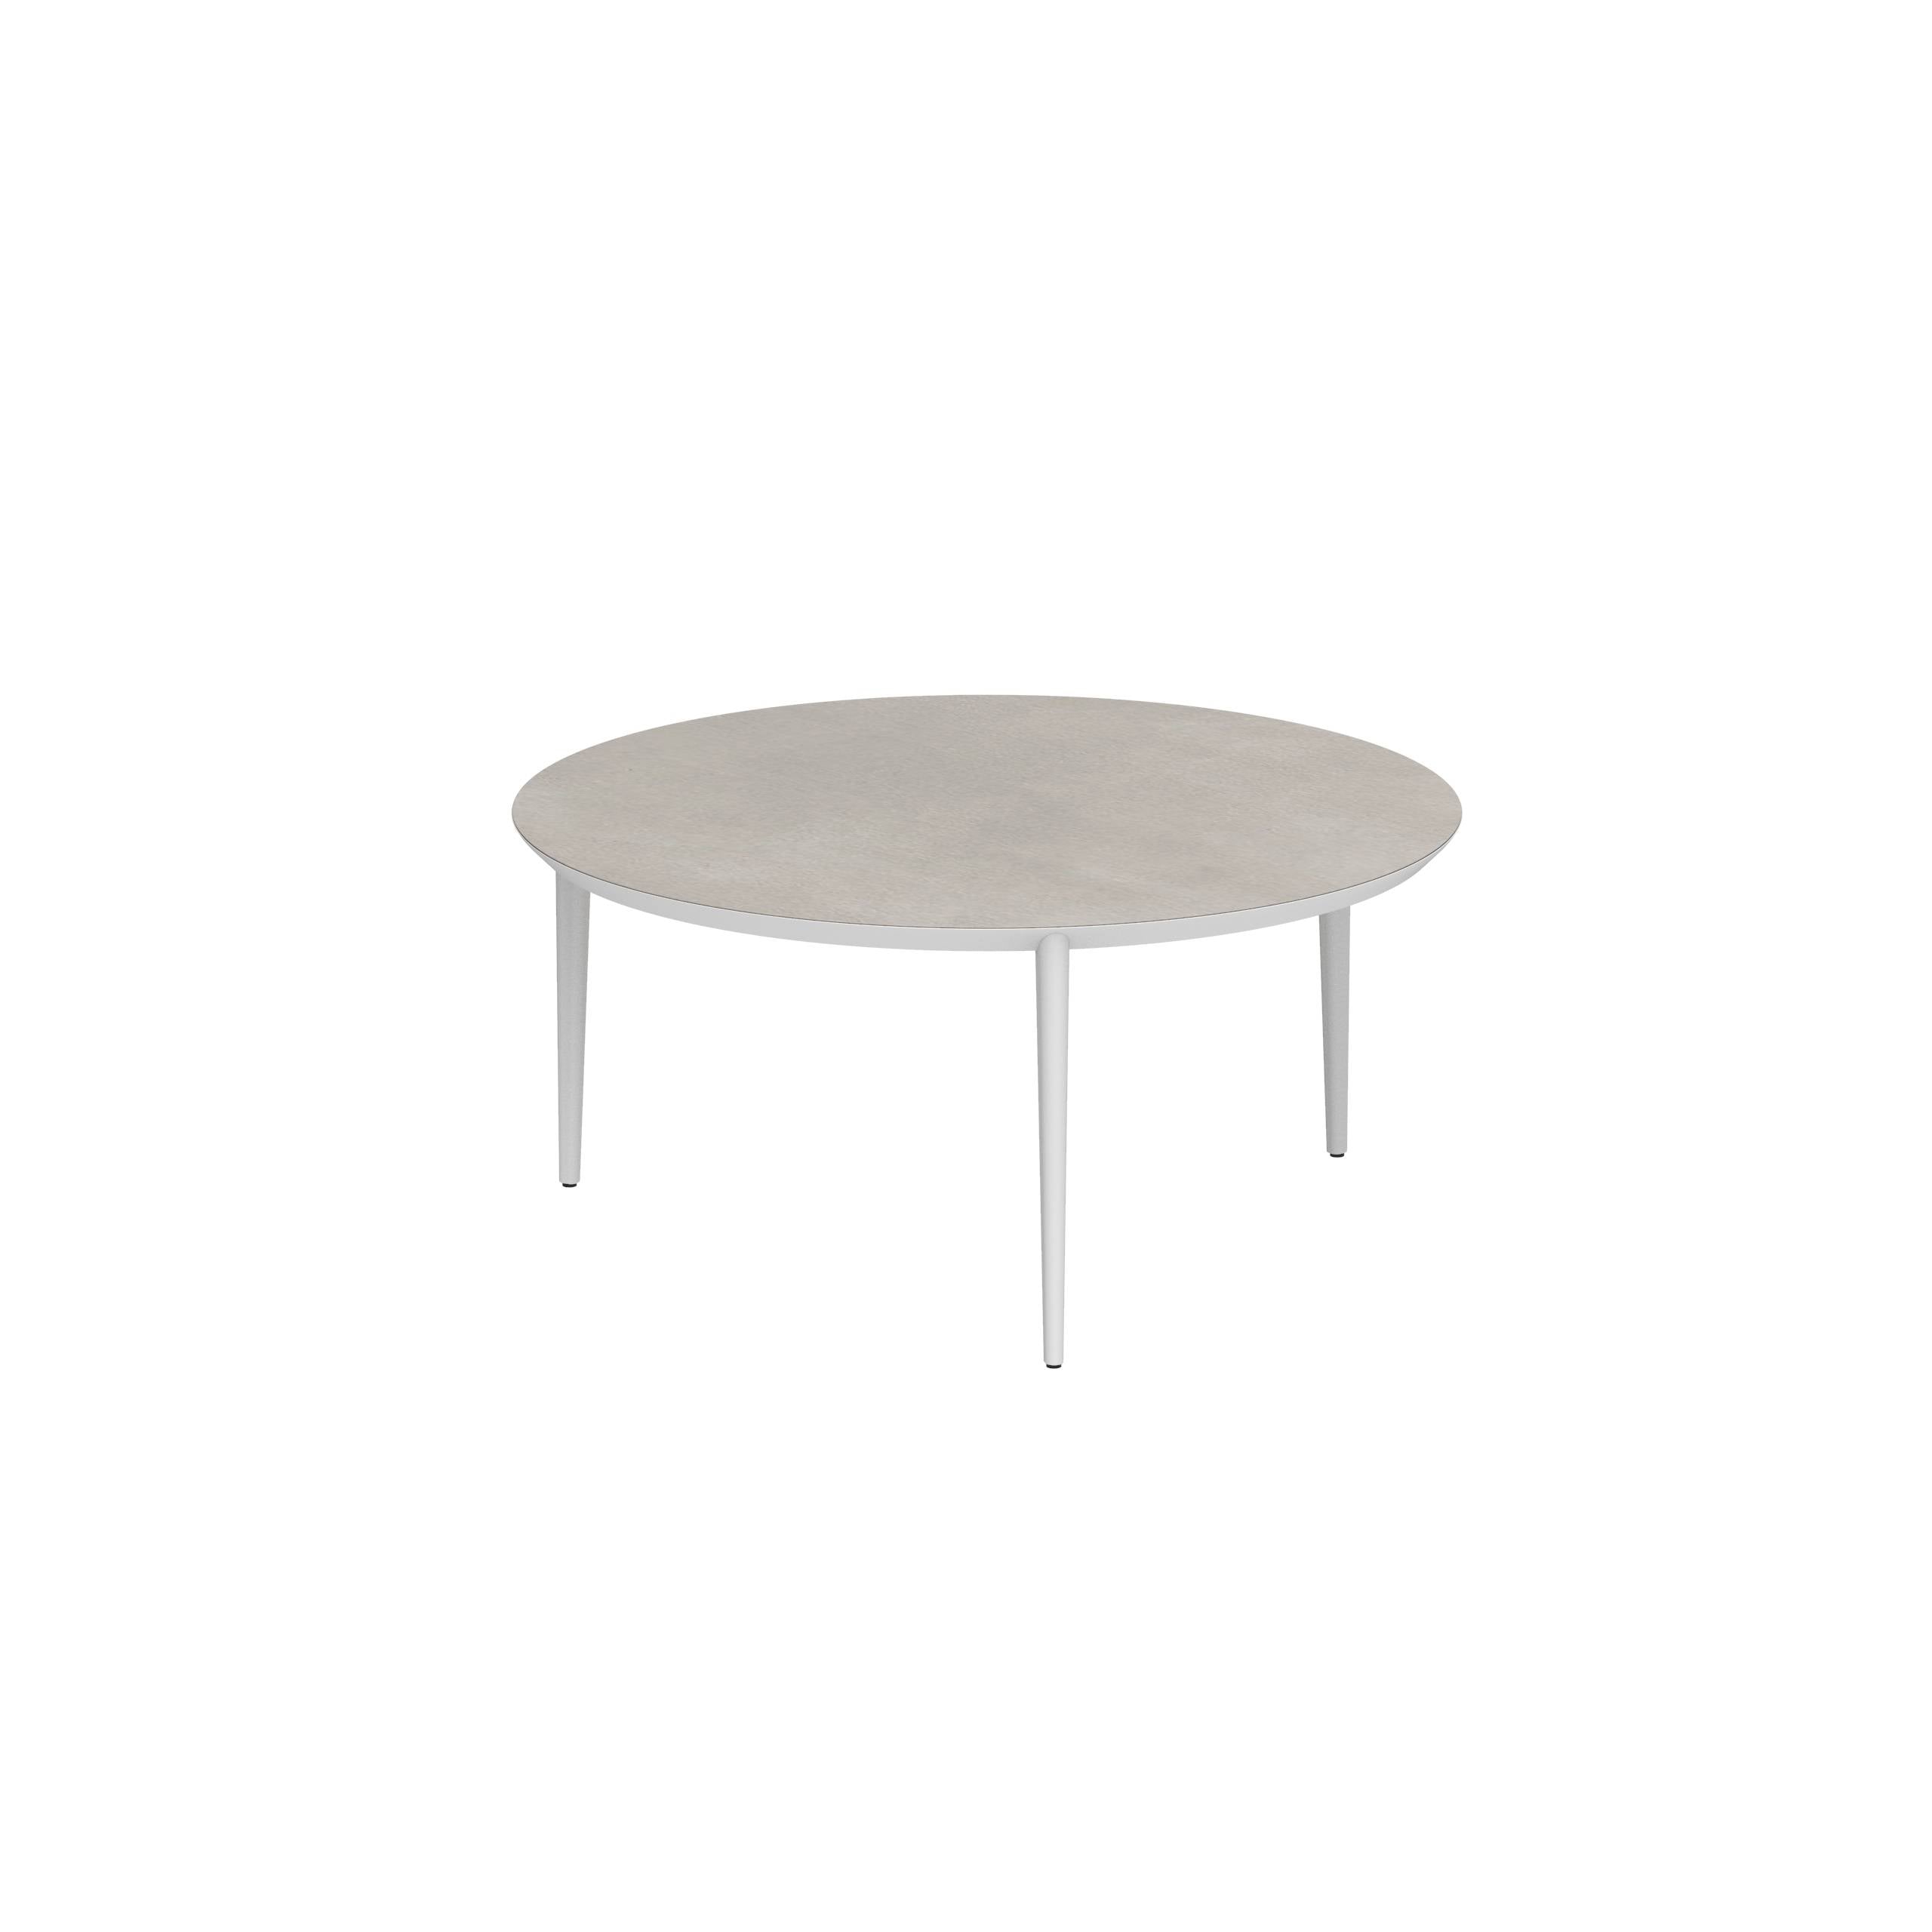 U-Nite Table Round Ø 160cm Alu Legs White - Table Top Ceramic Cemento Luminoso